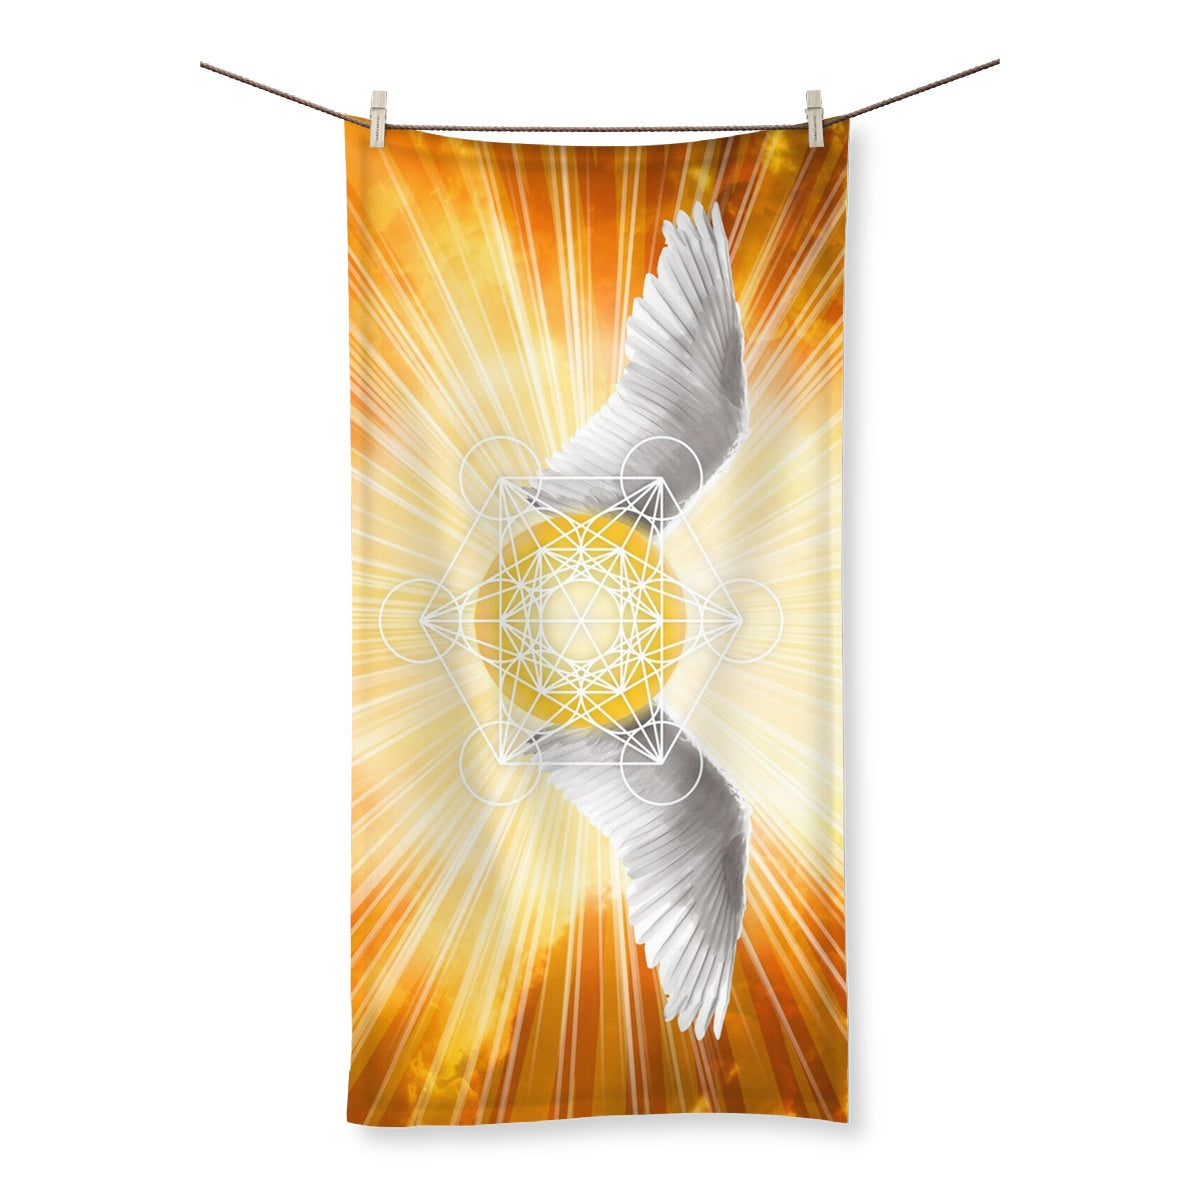 Archangel Metatron - Towel